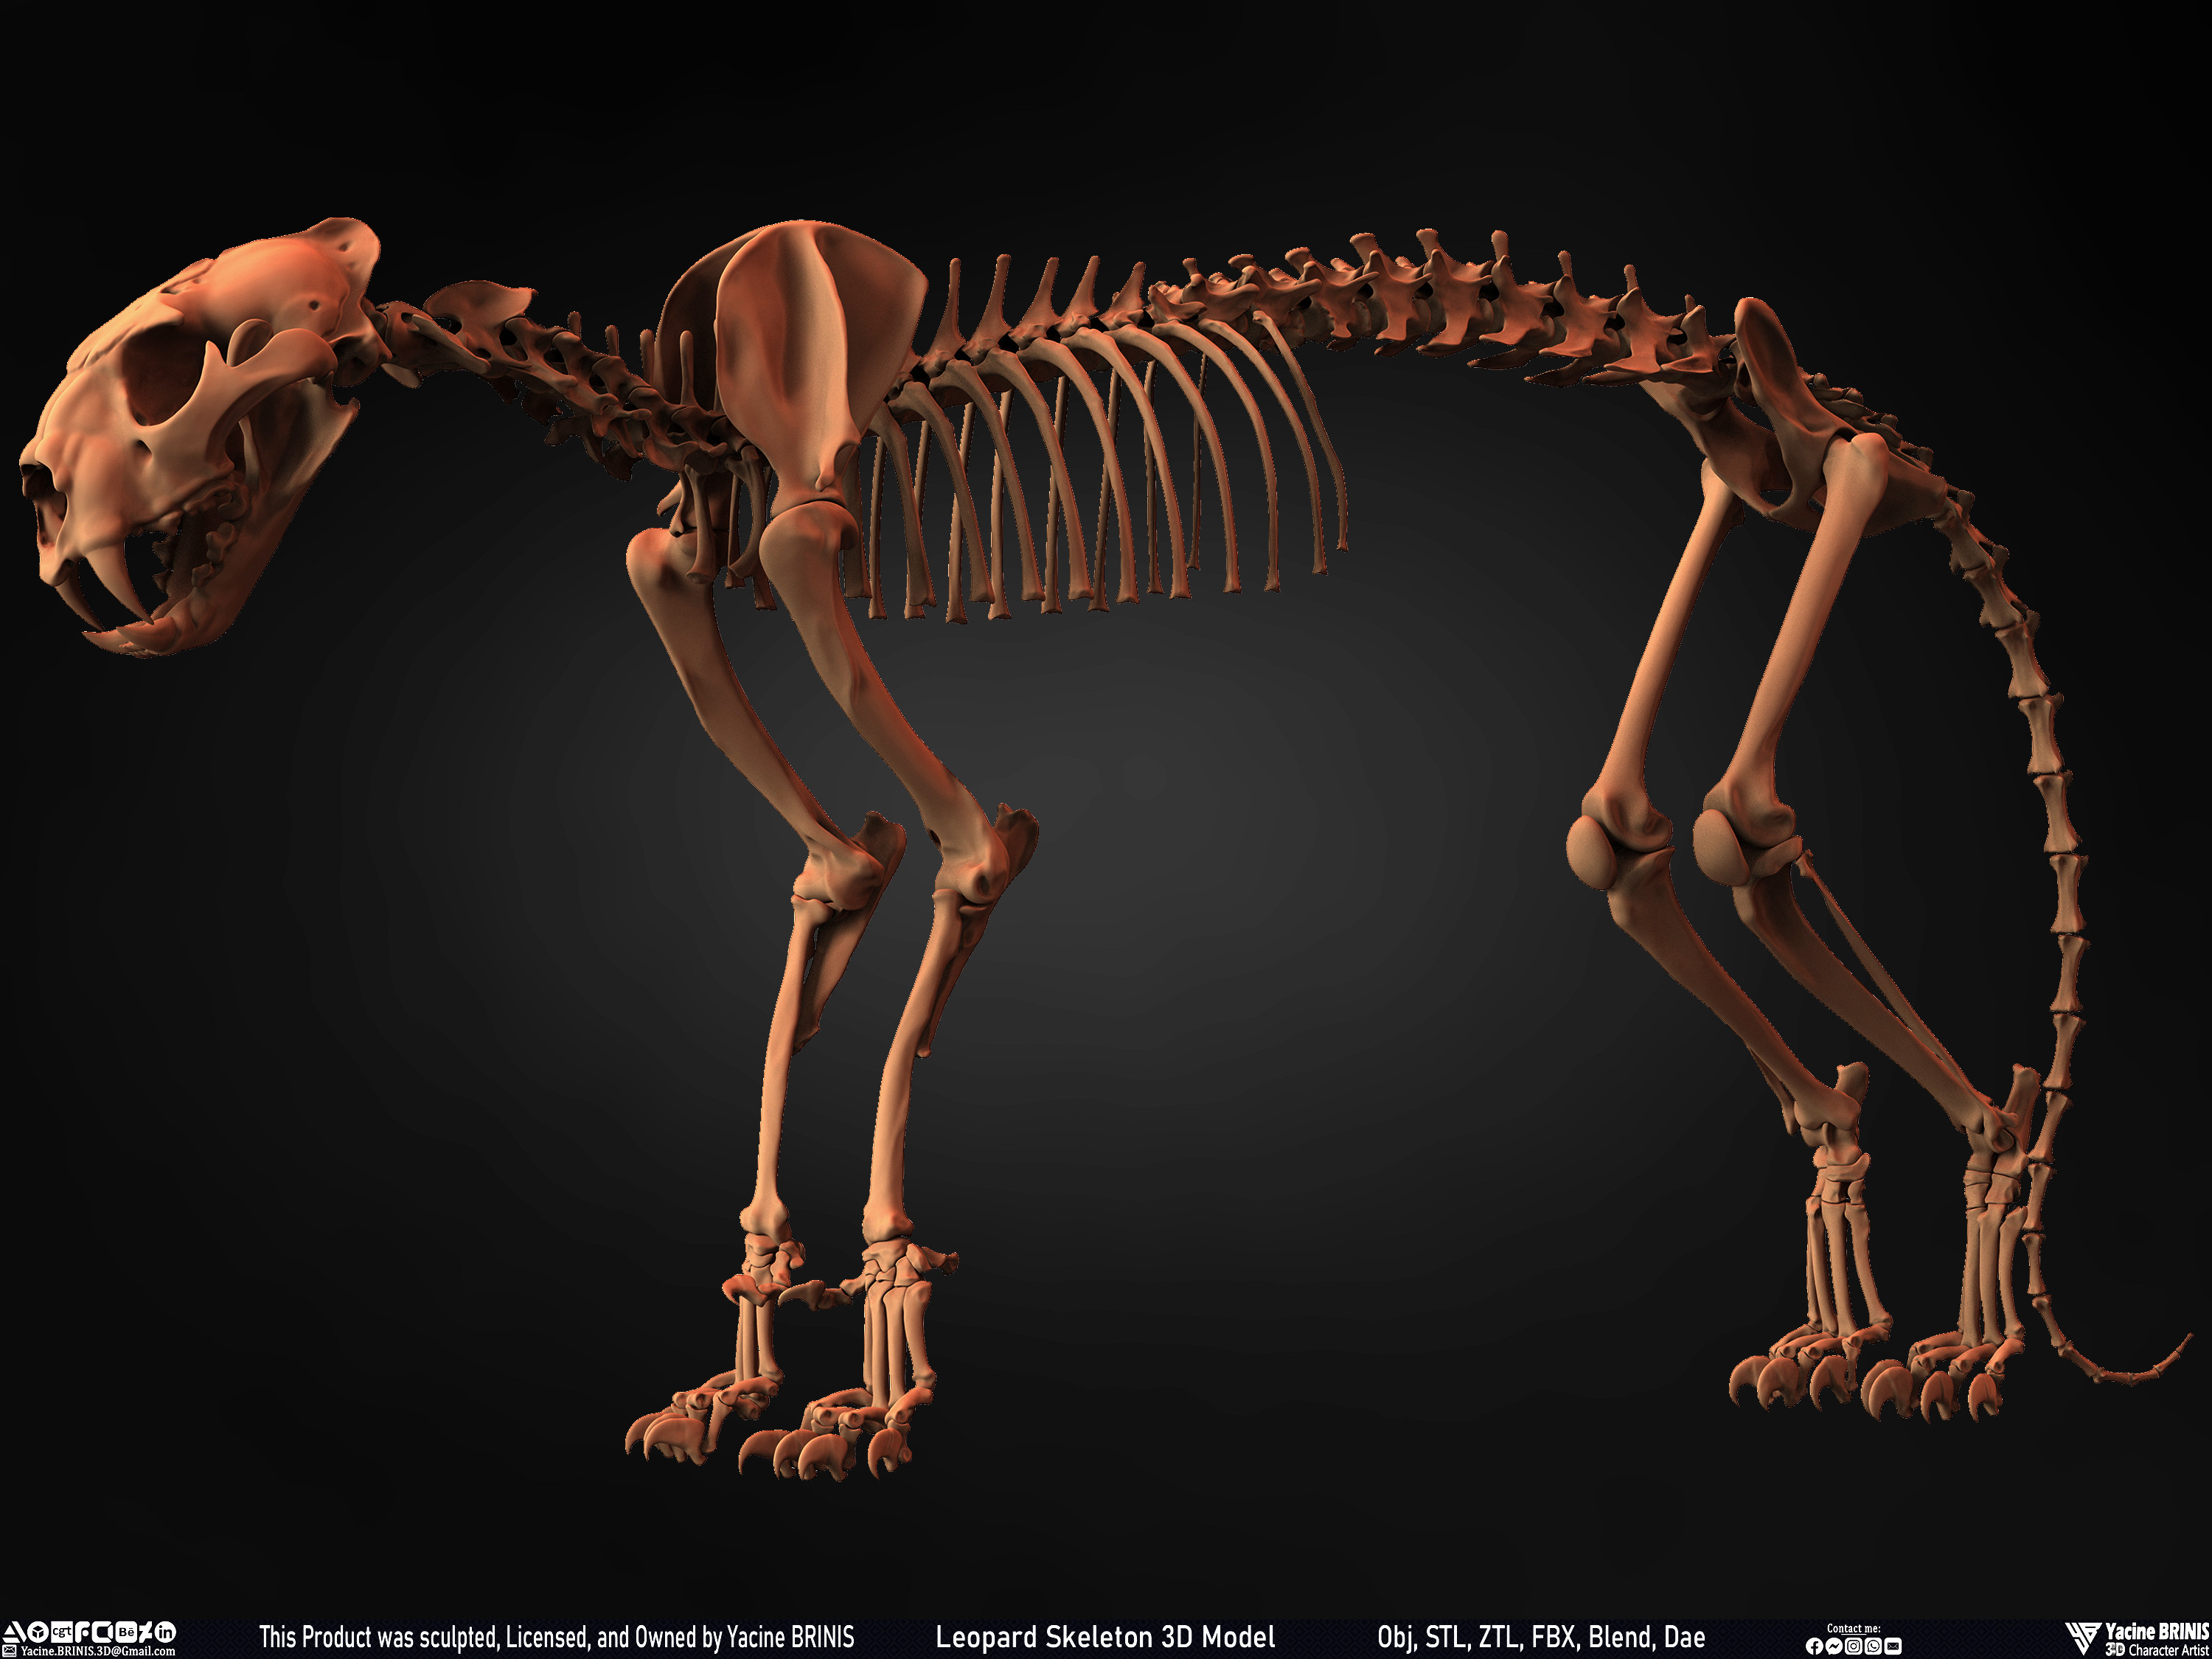 Leopard Skeleton 3D Model Sculpted By Yacine BRINIS 010